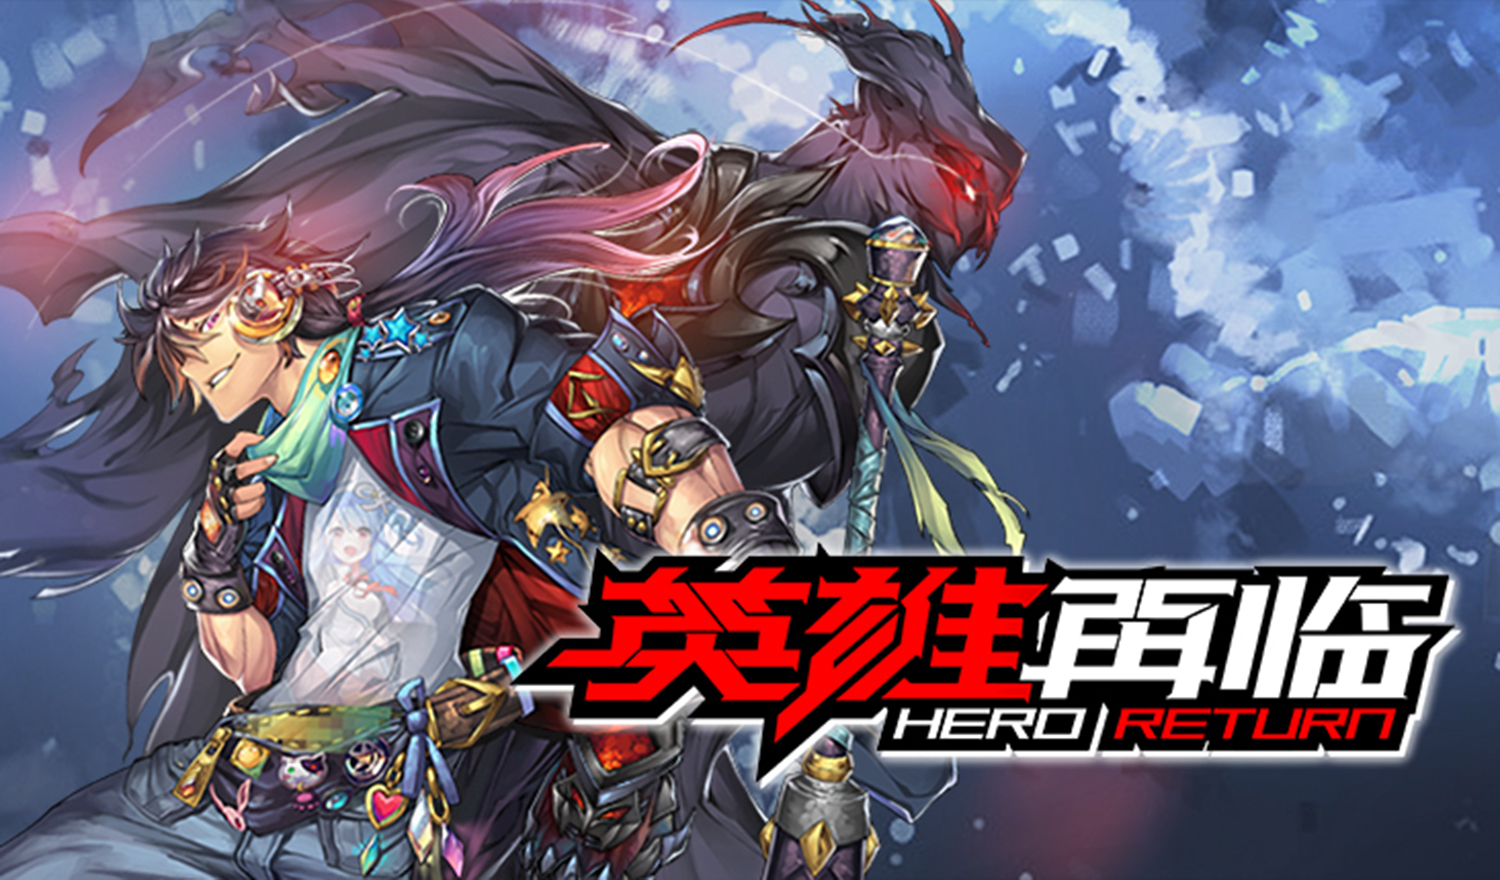 Hero Return - Shiro Series